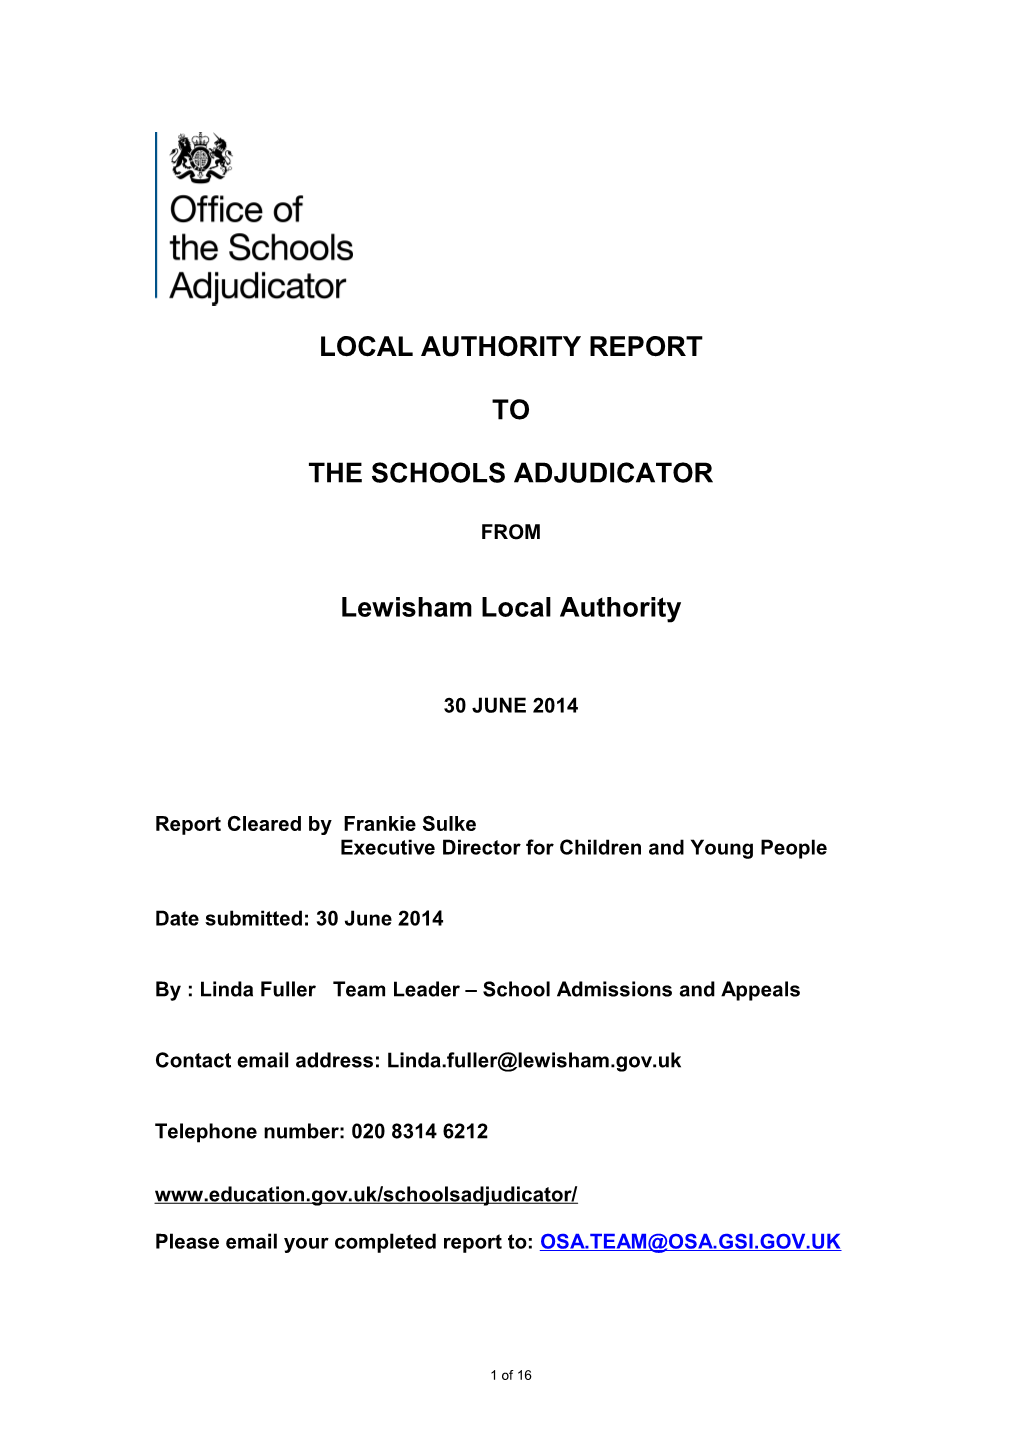 LA Report Template 2013 - 7 March 2013